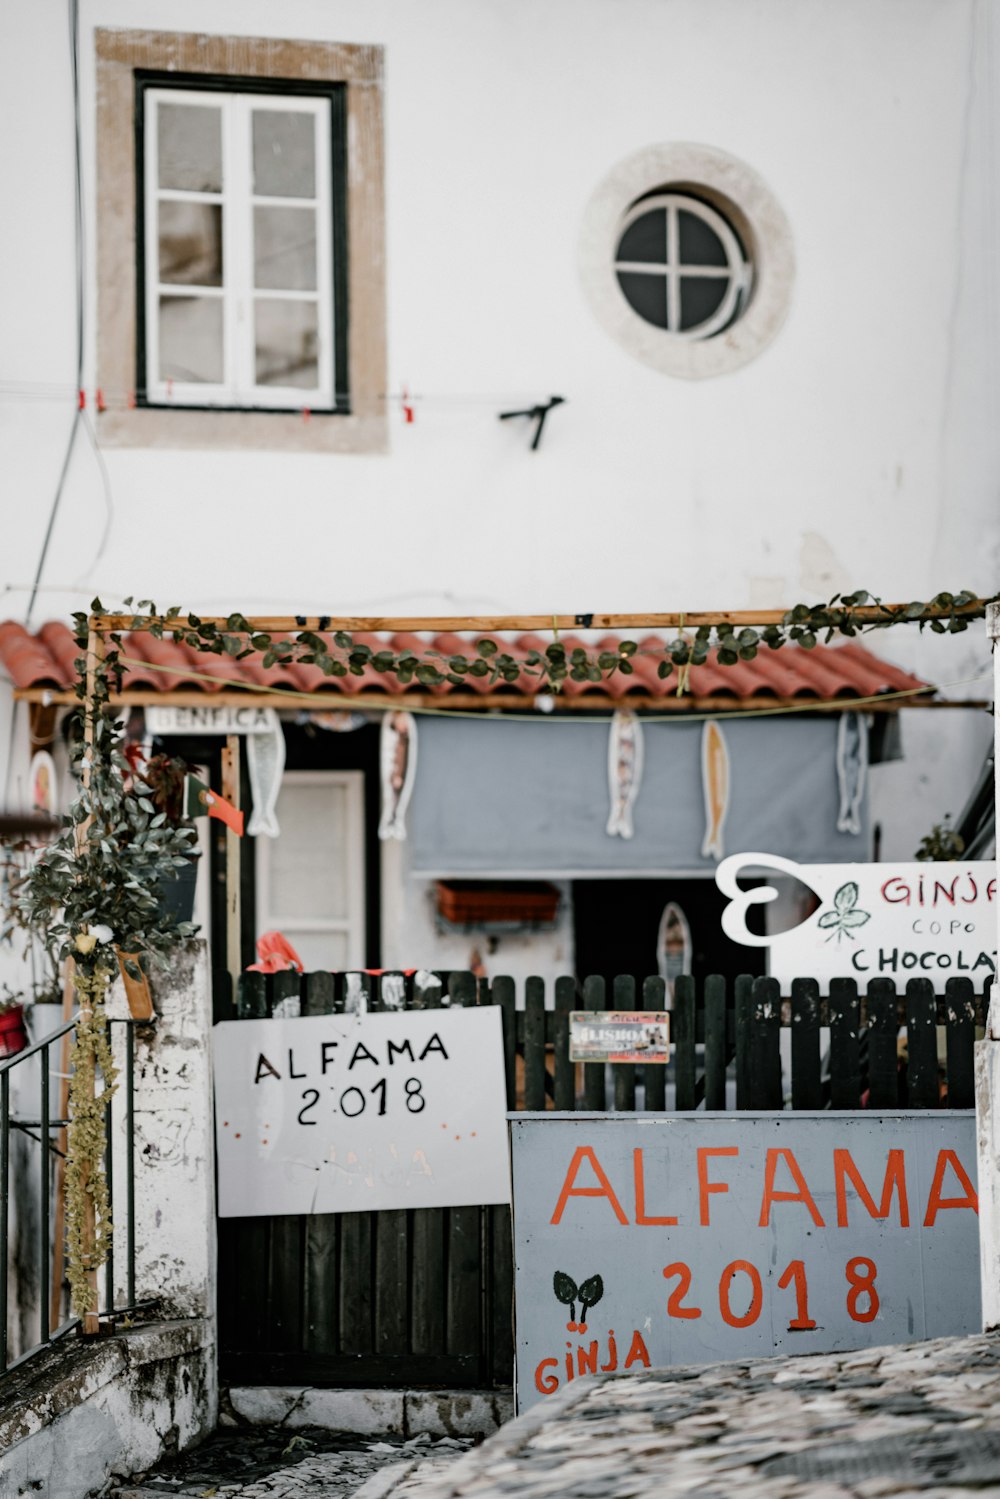 Señalización de Alfama 2018 en la puerta